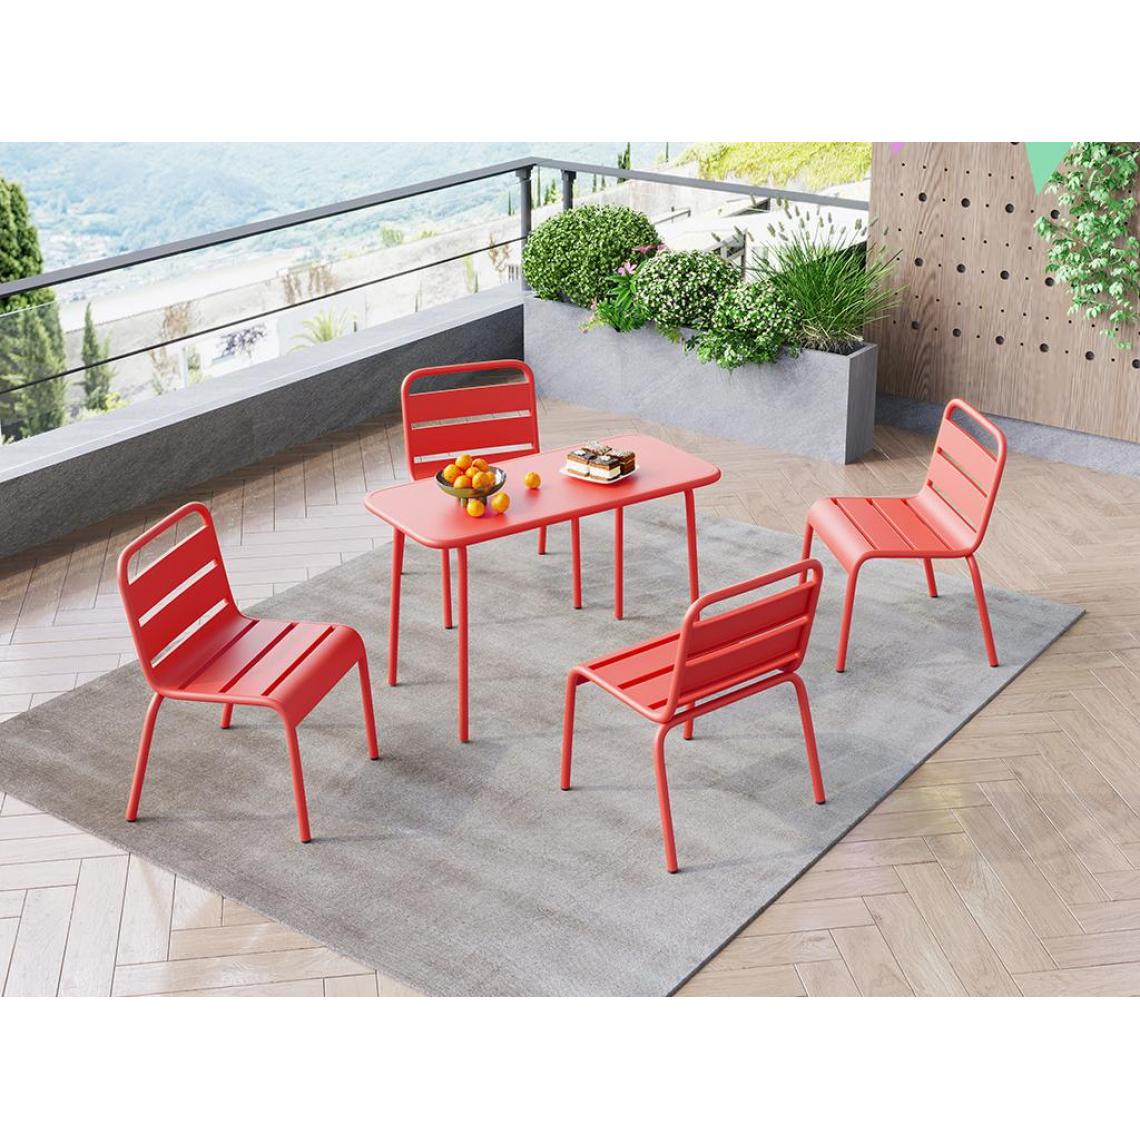 Vente-Unique - Ensemble jardin table et chaise POPAYAN - Ensembles tables et chaises